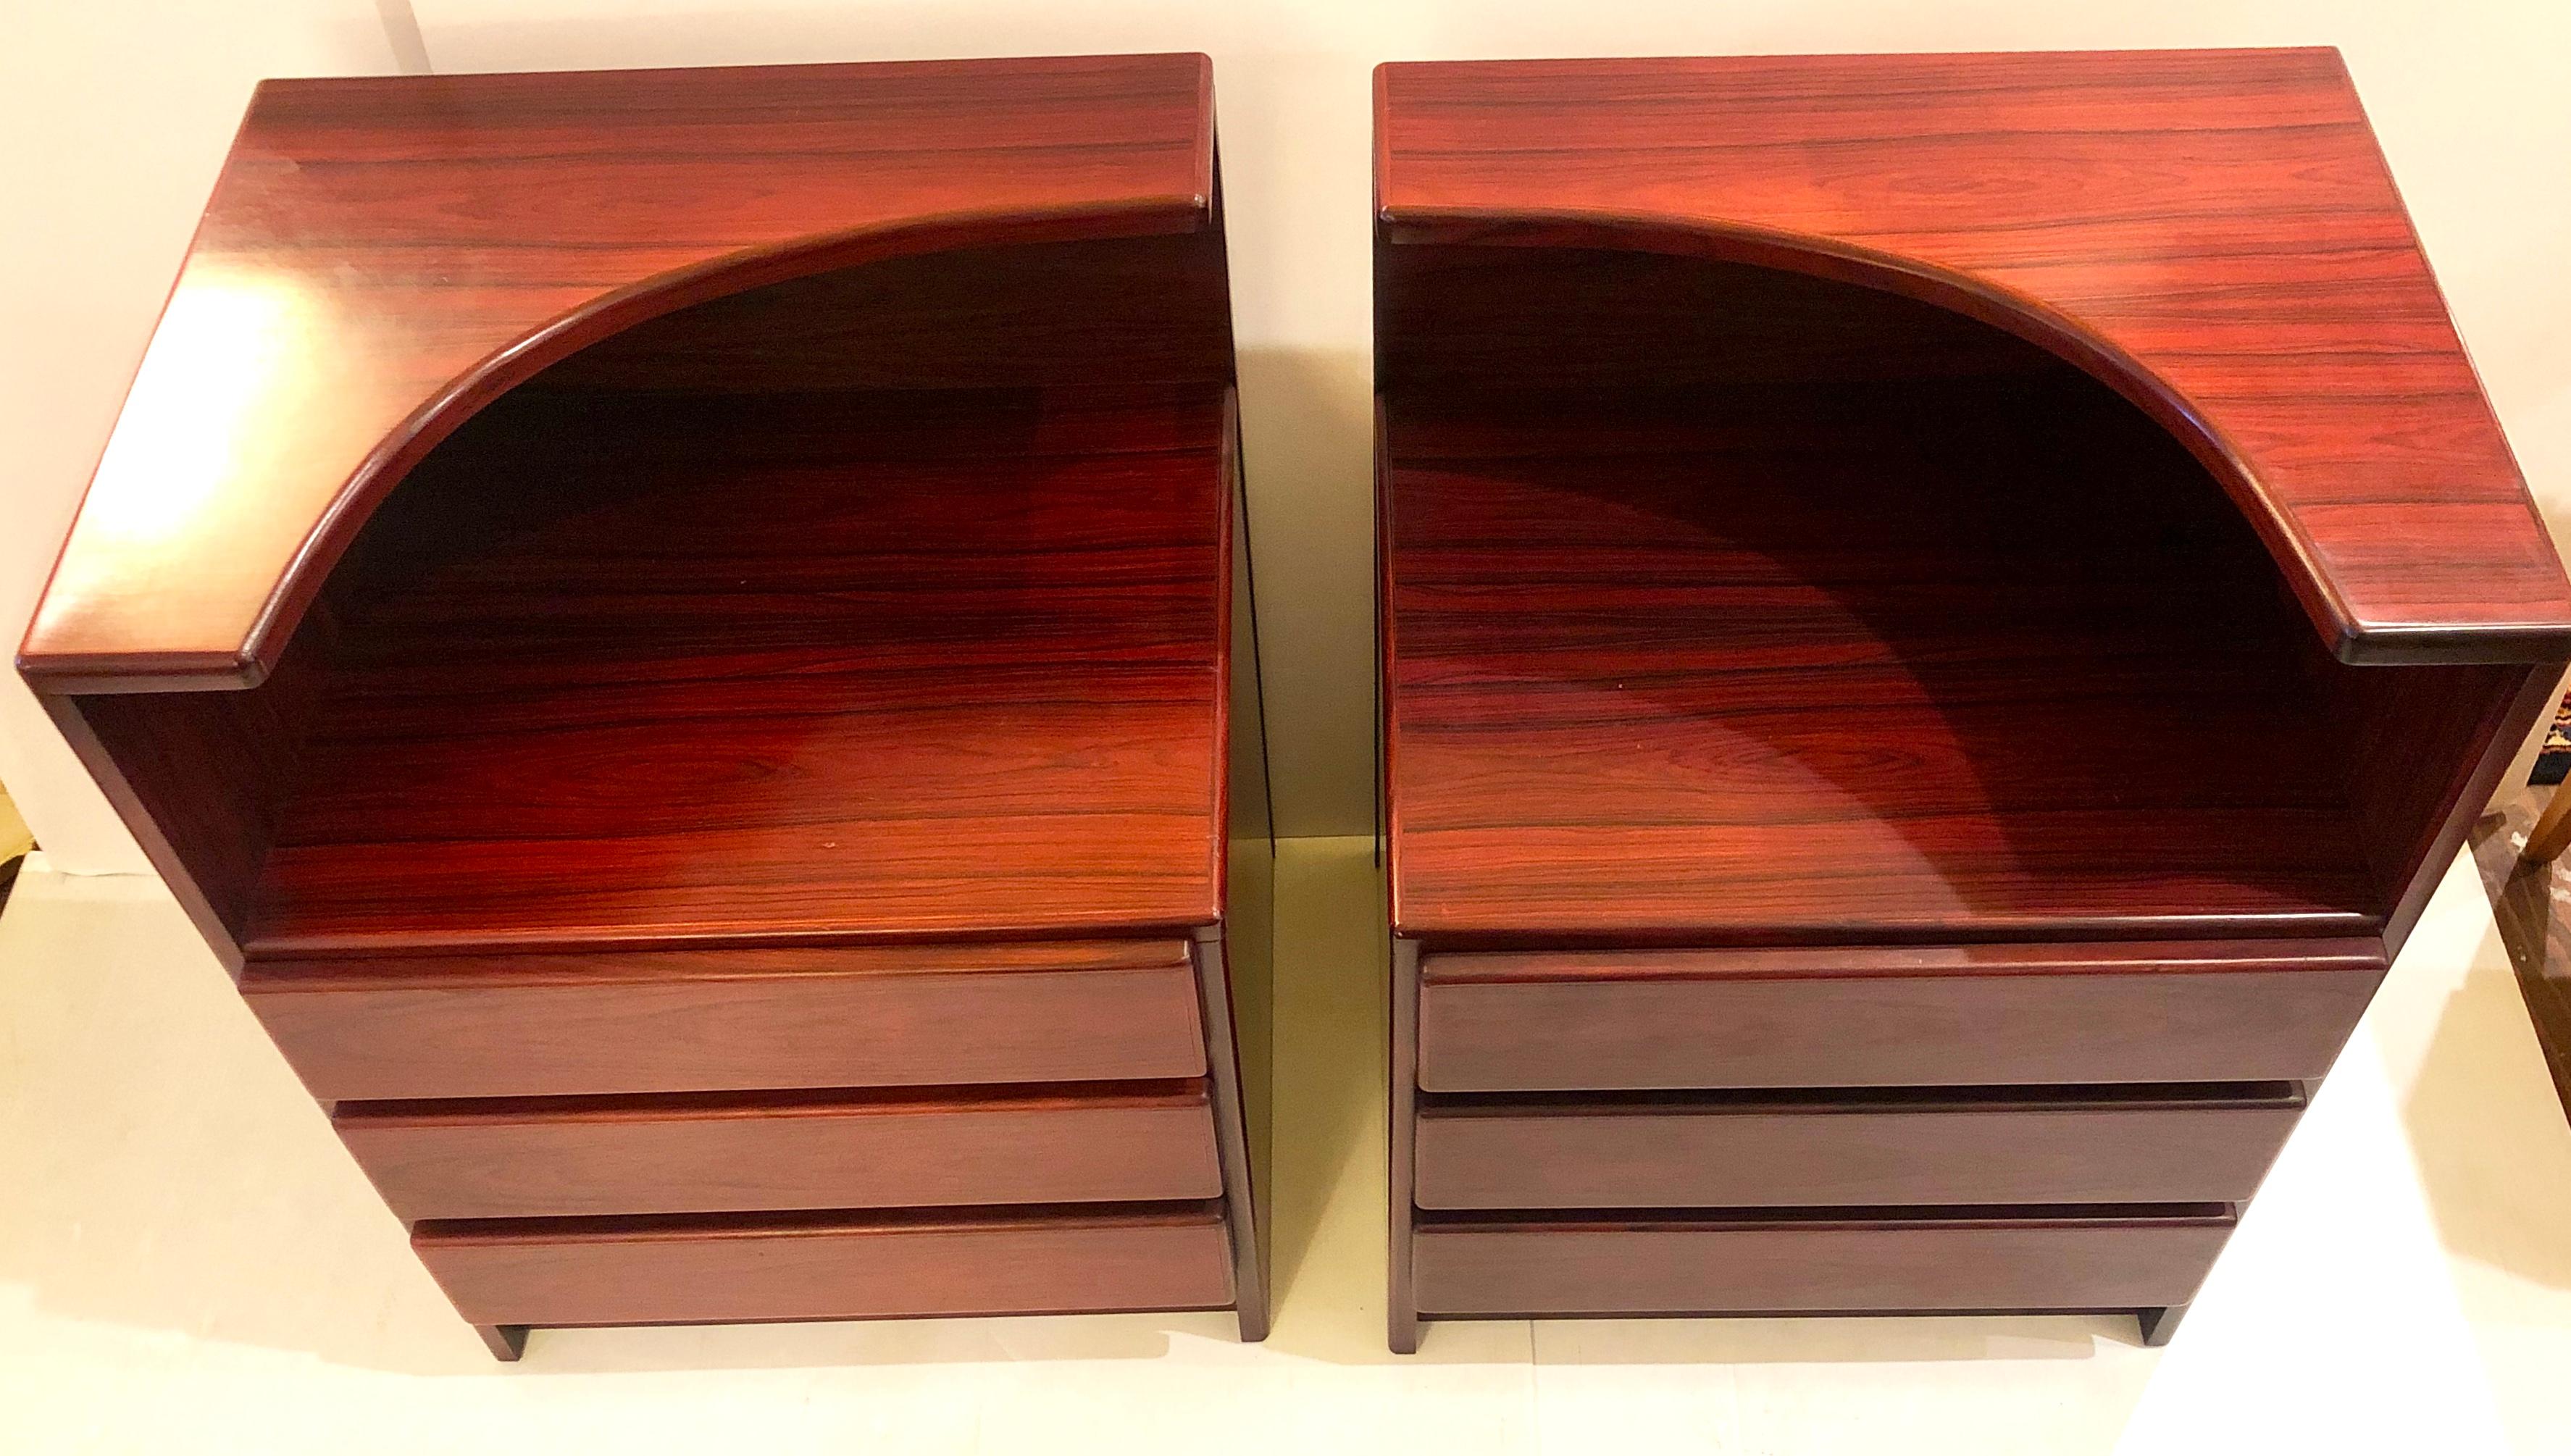 Superbe paire de tables de nuit en bois de rose à trois tiroirs, très propre, datant des années 1980.

  